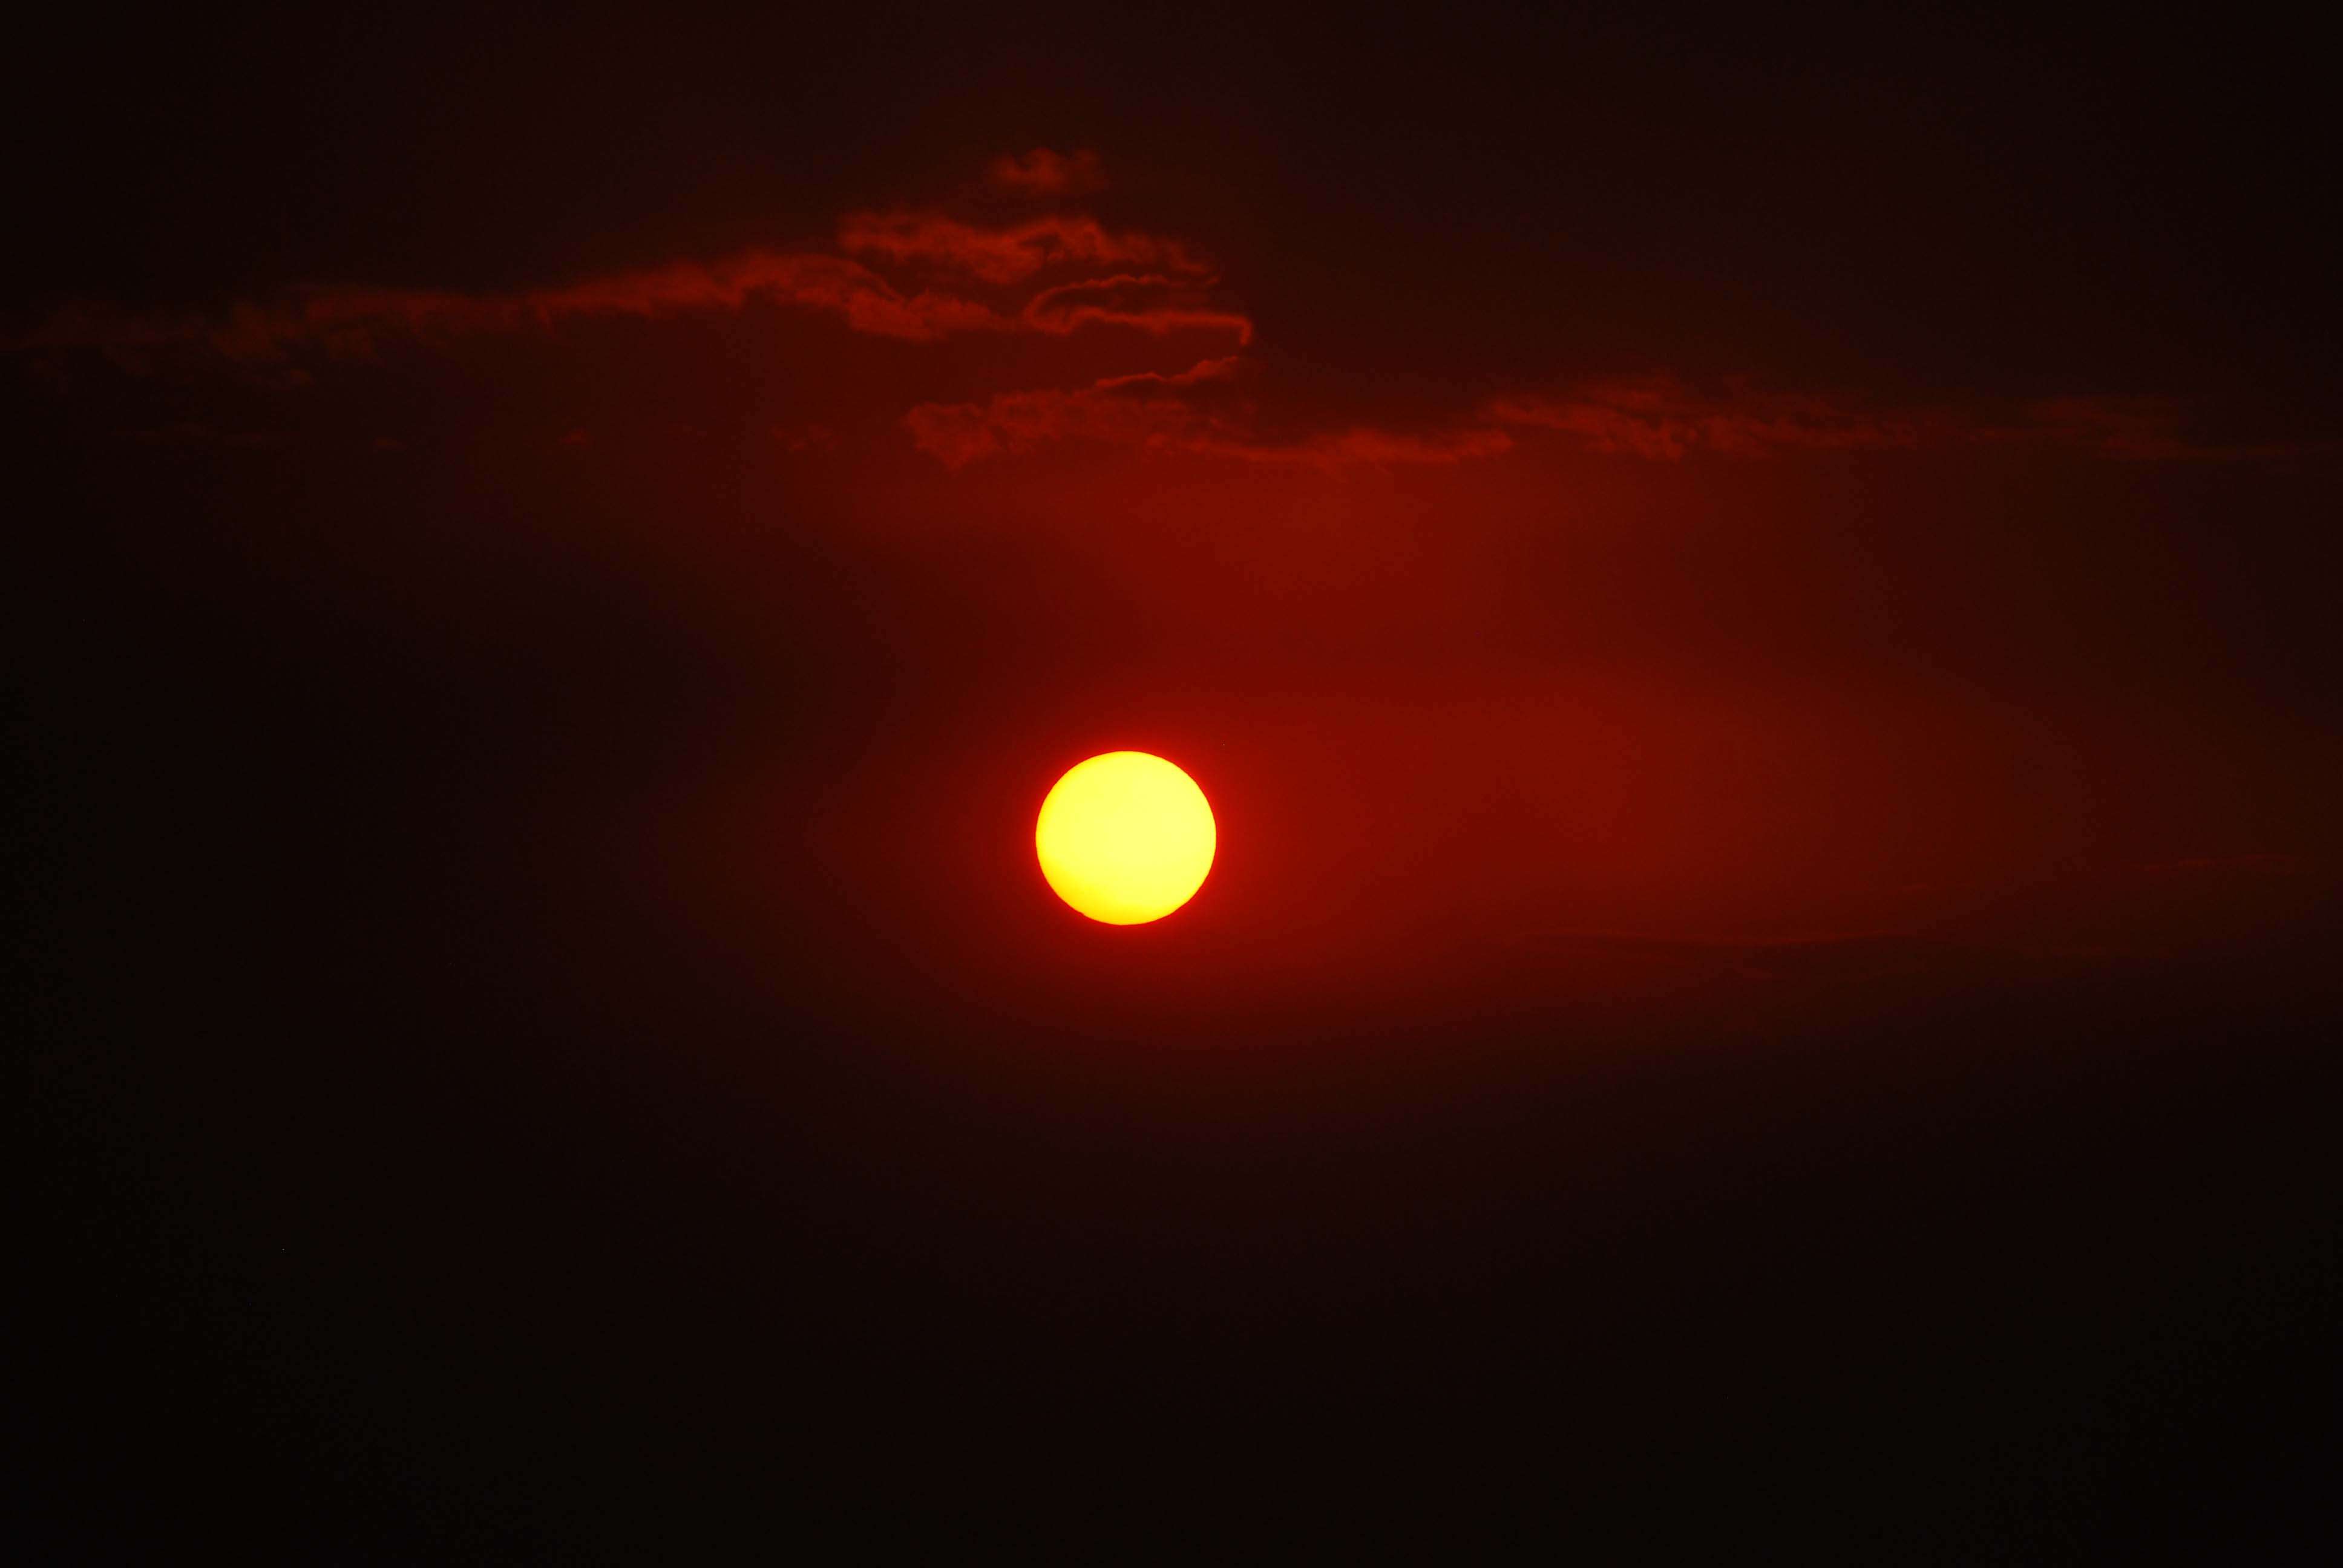 Regreso al Mara - Kenia - Blogs de Kenia - Enkewa y una maravillosa puesta de sol (18)